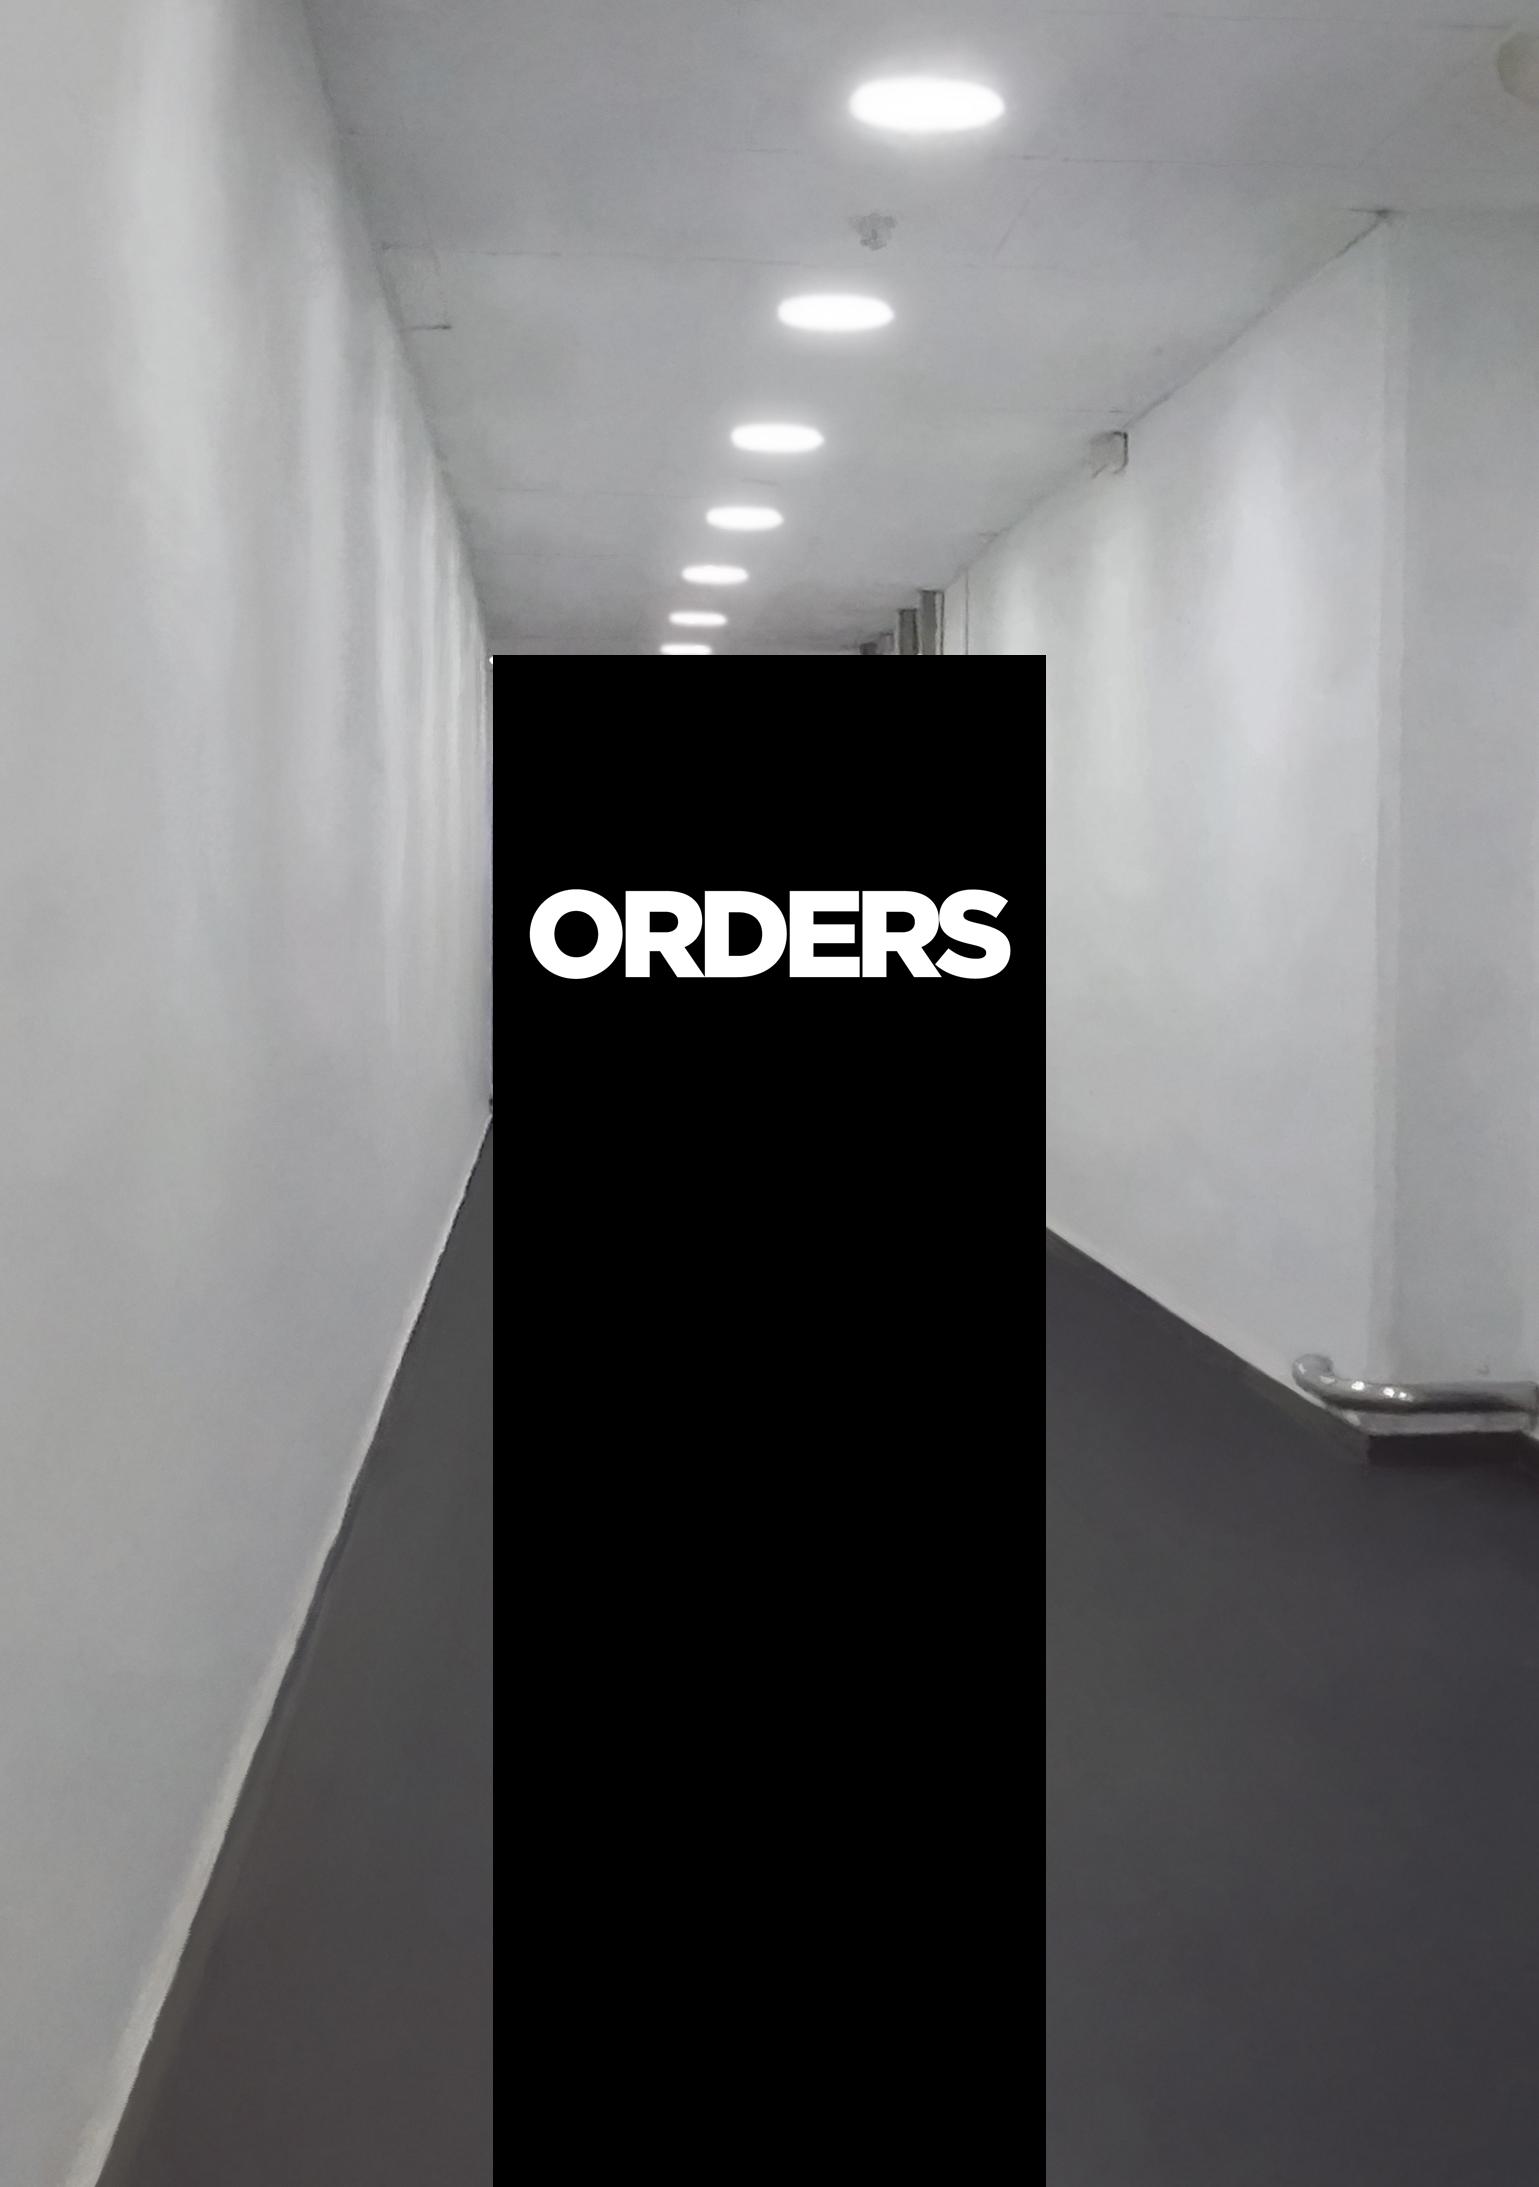 Orders (2021)